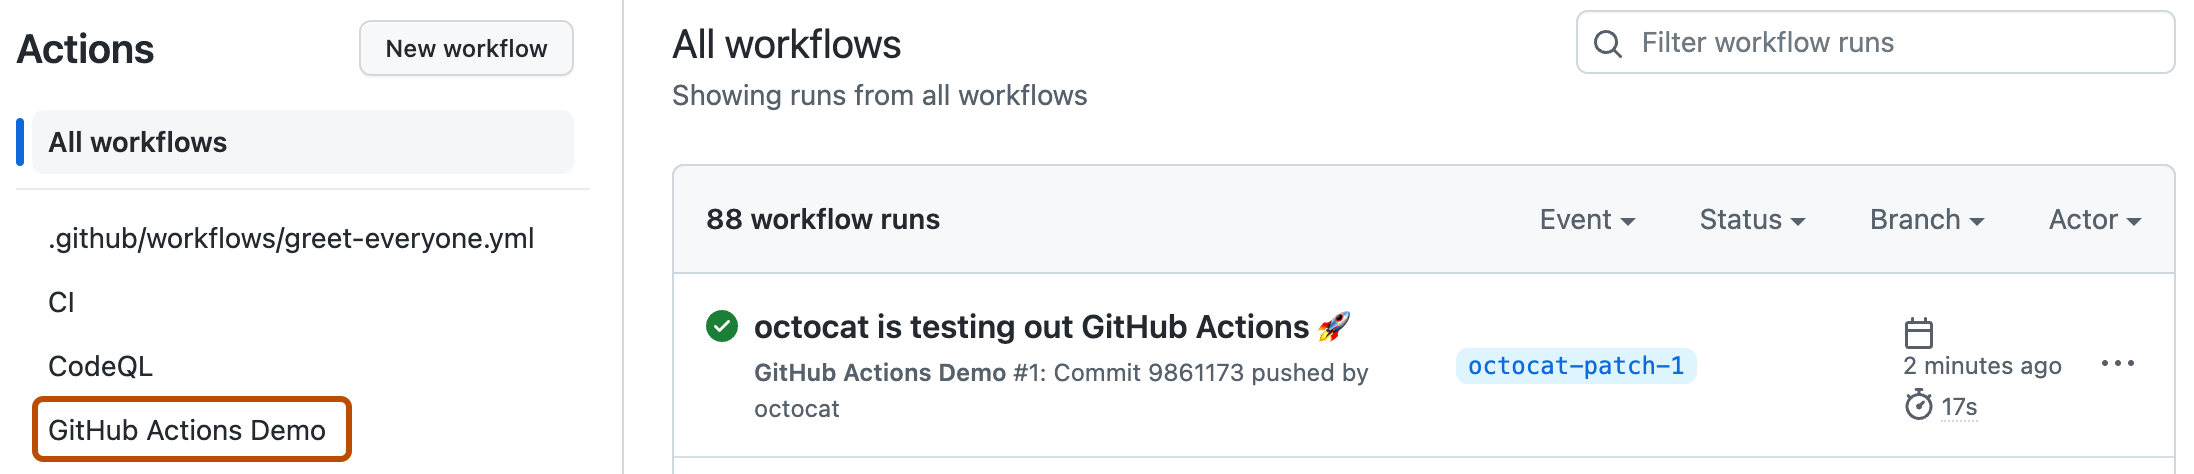 Capture d’écran de la page « Actions ». Le nom de l’exemple de workflow, « GitHub Actions Demo », est mis en évidence avec un encadré orange foncé.